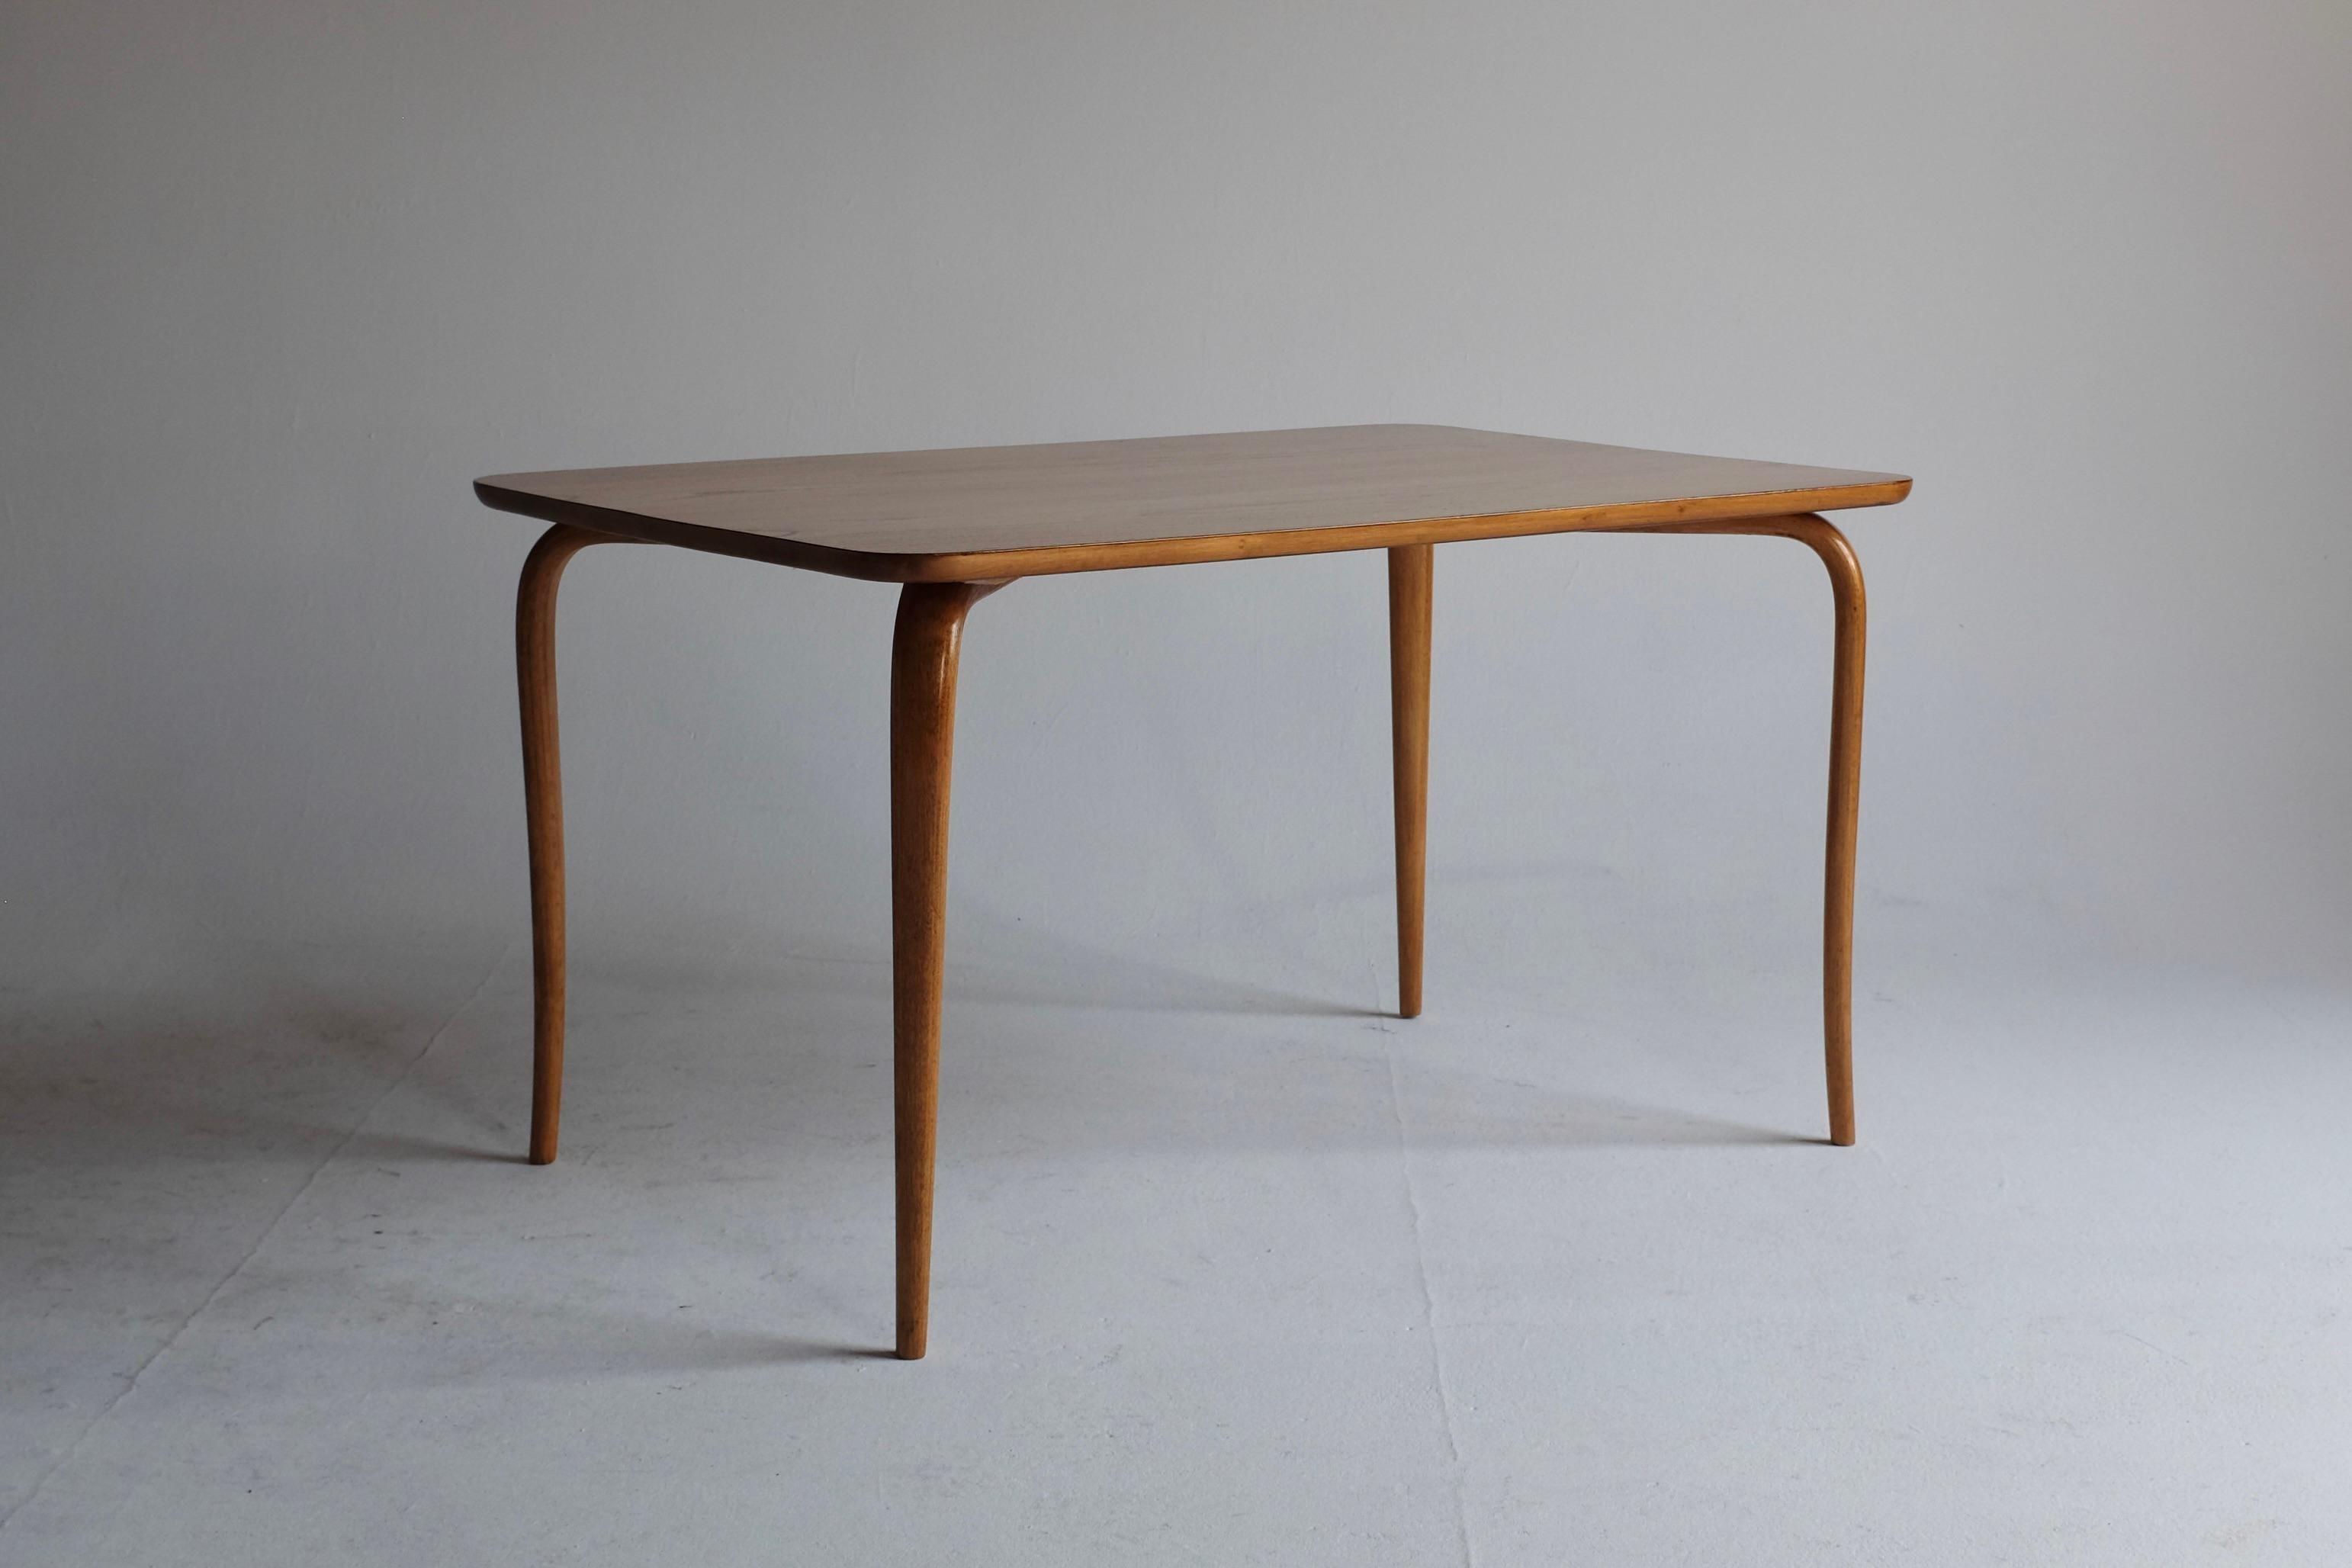 1950er Beistelltisch von Bruno Mathsson für Firma Karl Mathsson, Värnamo, Schweden. Der 1942 entworfene Tisch hat die charakteristischen geschwungenen Beine, die auch in vielen Entwürfen von Bruno Mathsson zu finden sind. Der Tisch ist aus Birke mit